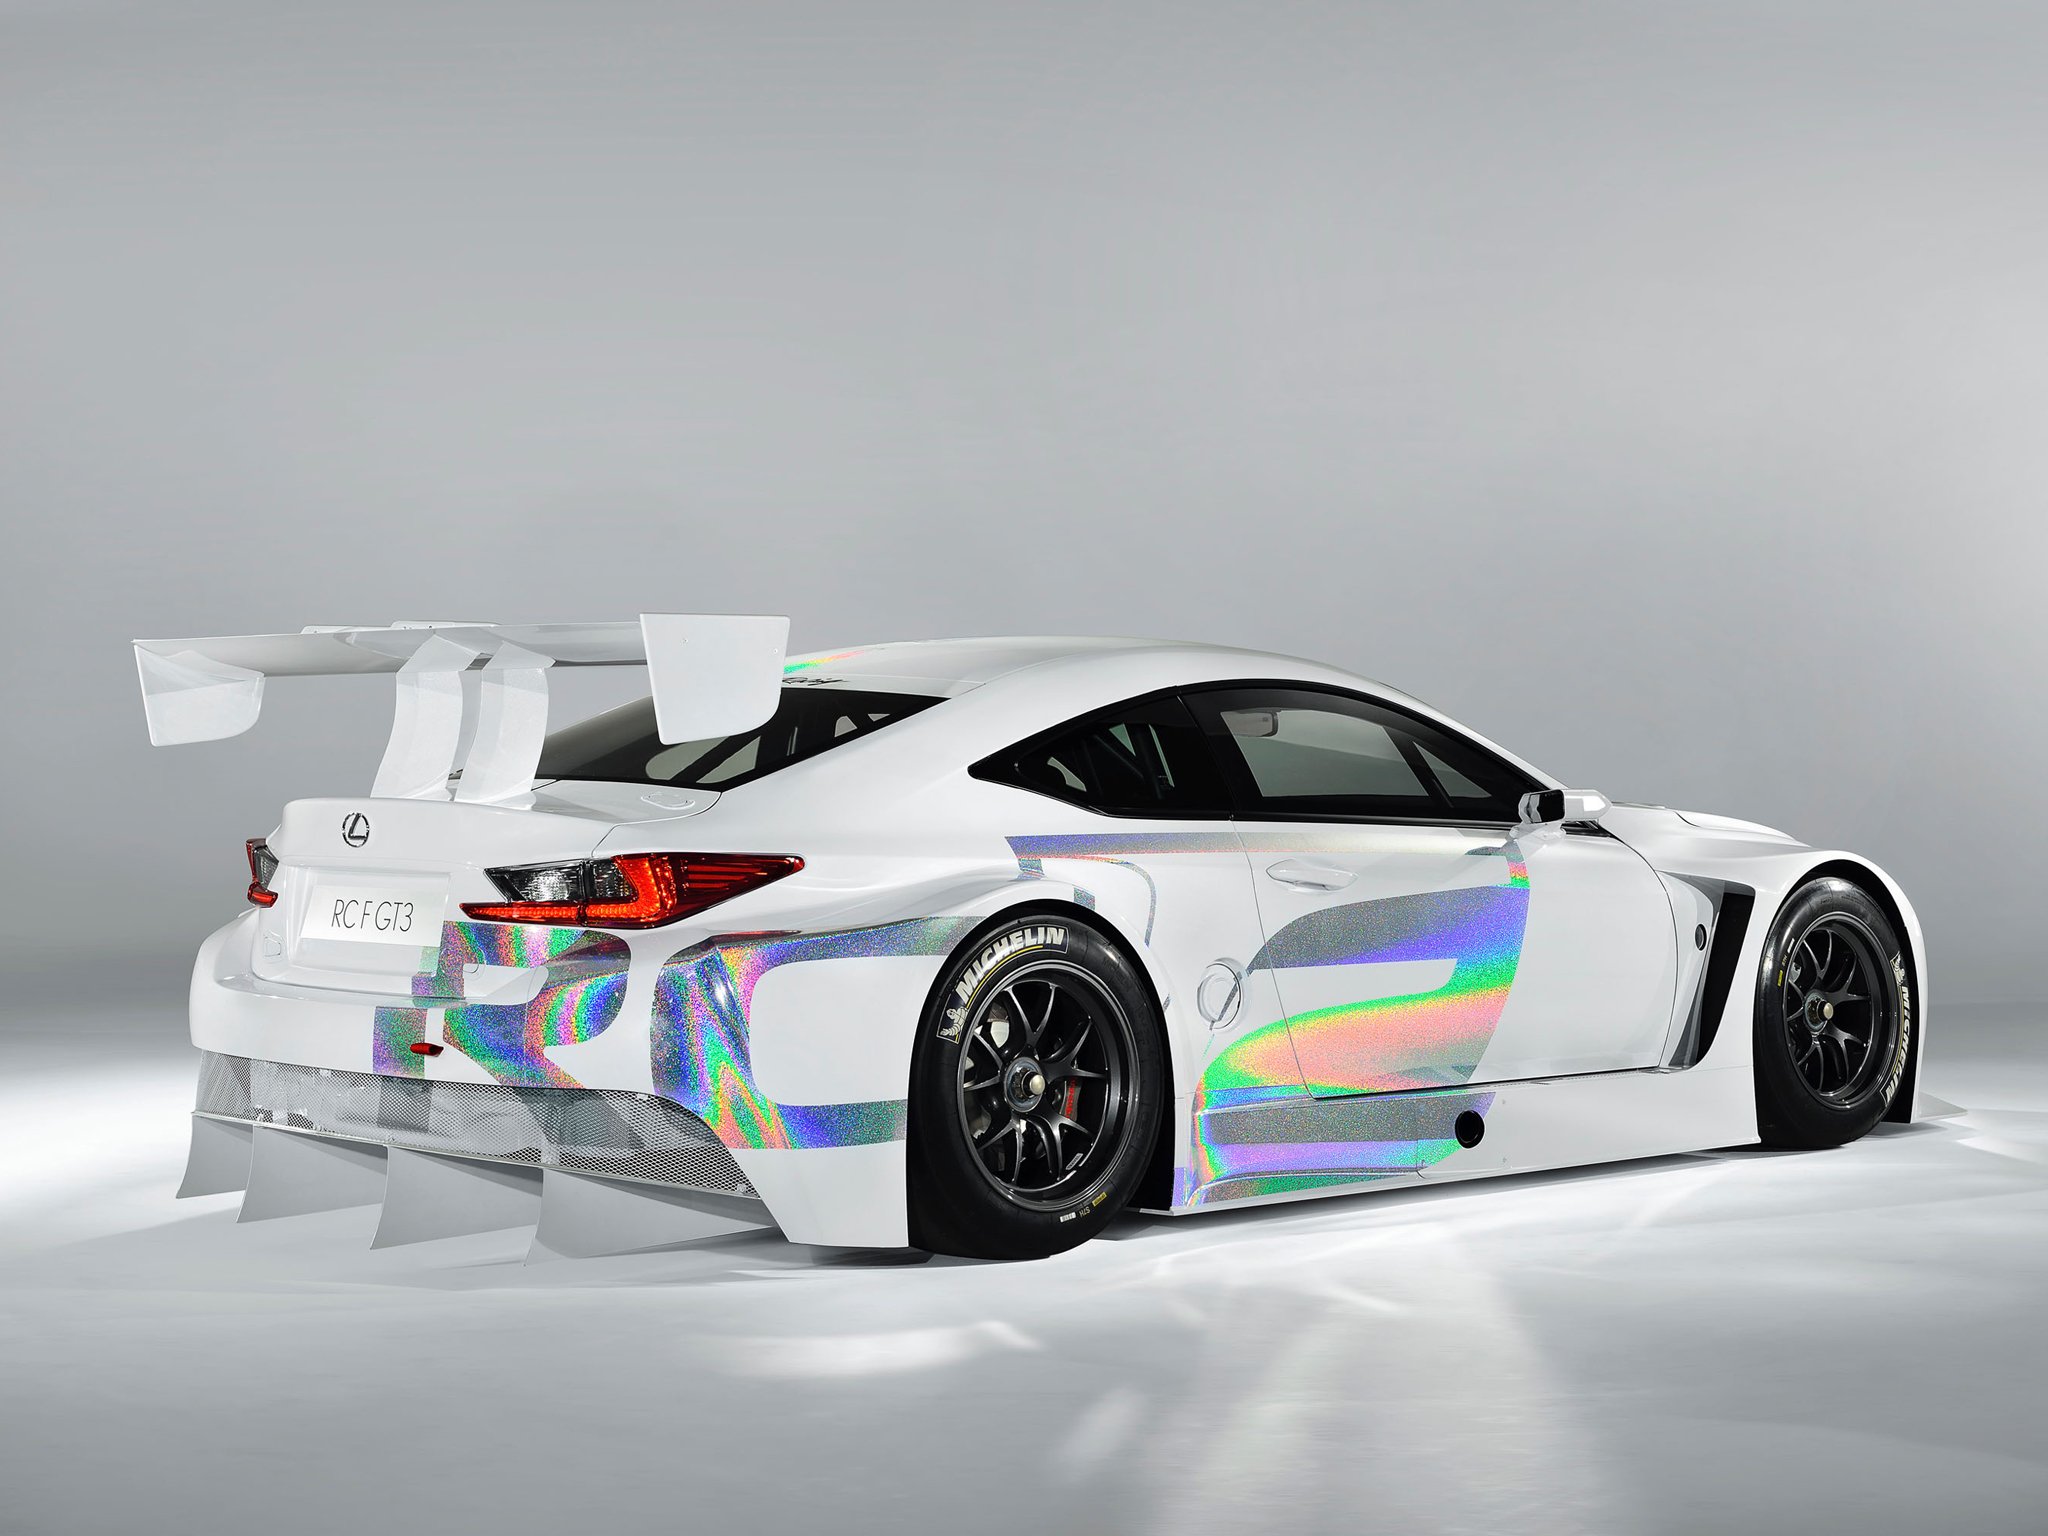 2014, Lexus, Rc f, Gt3, Concept, Race, Racing Wallpaper